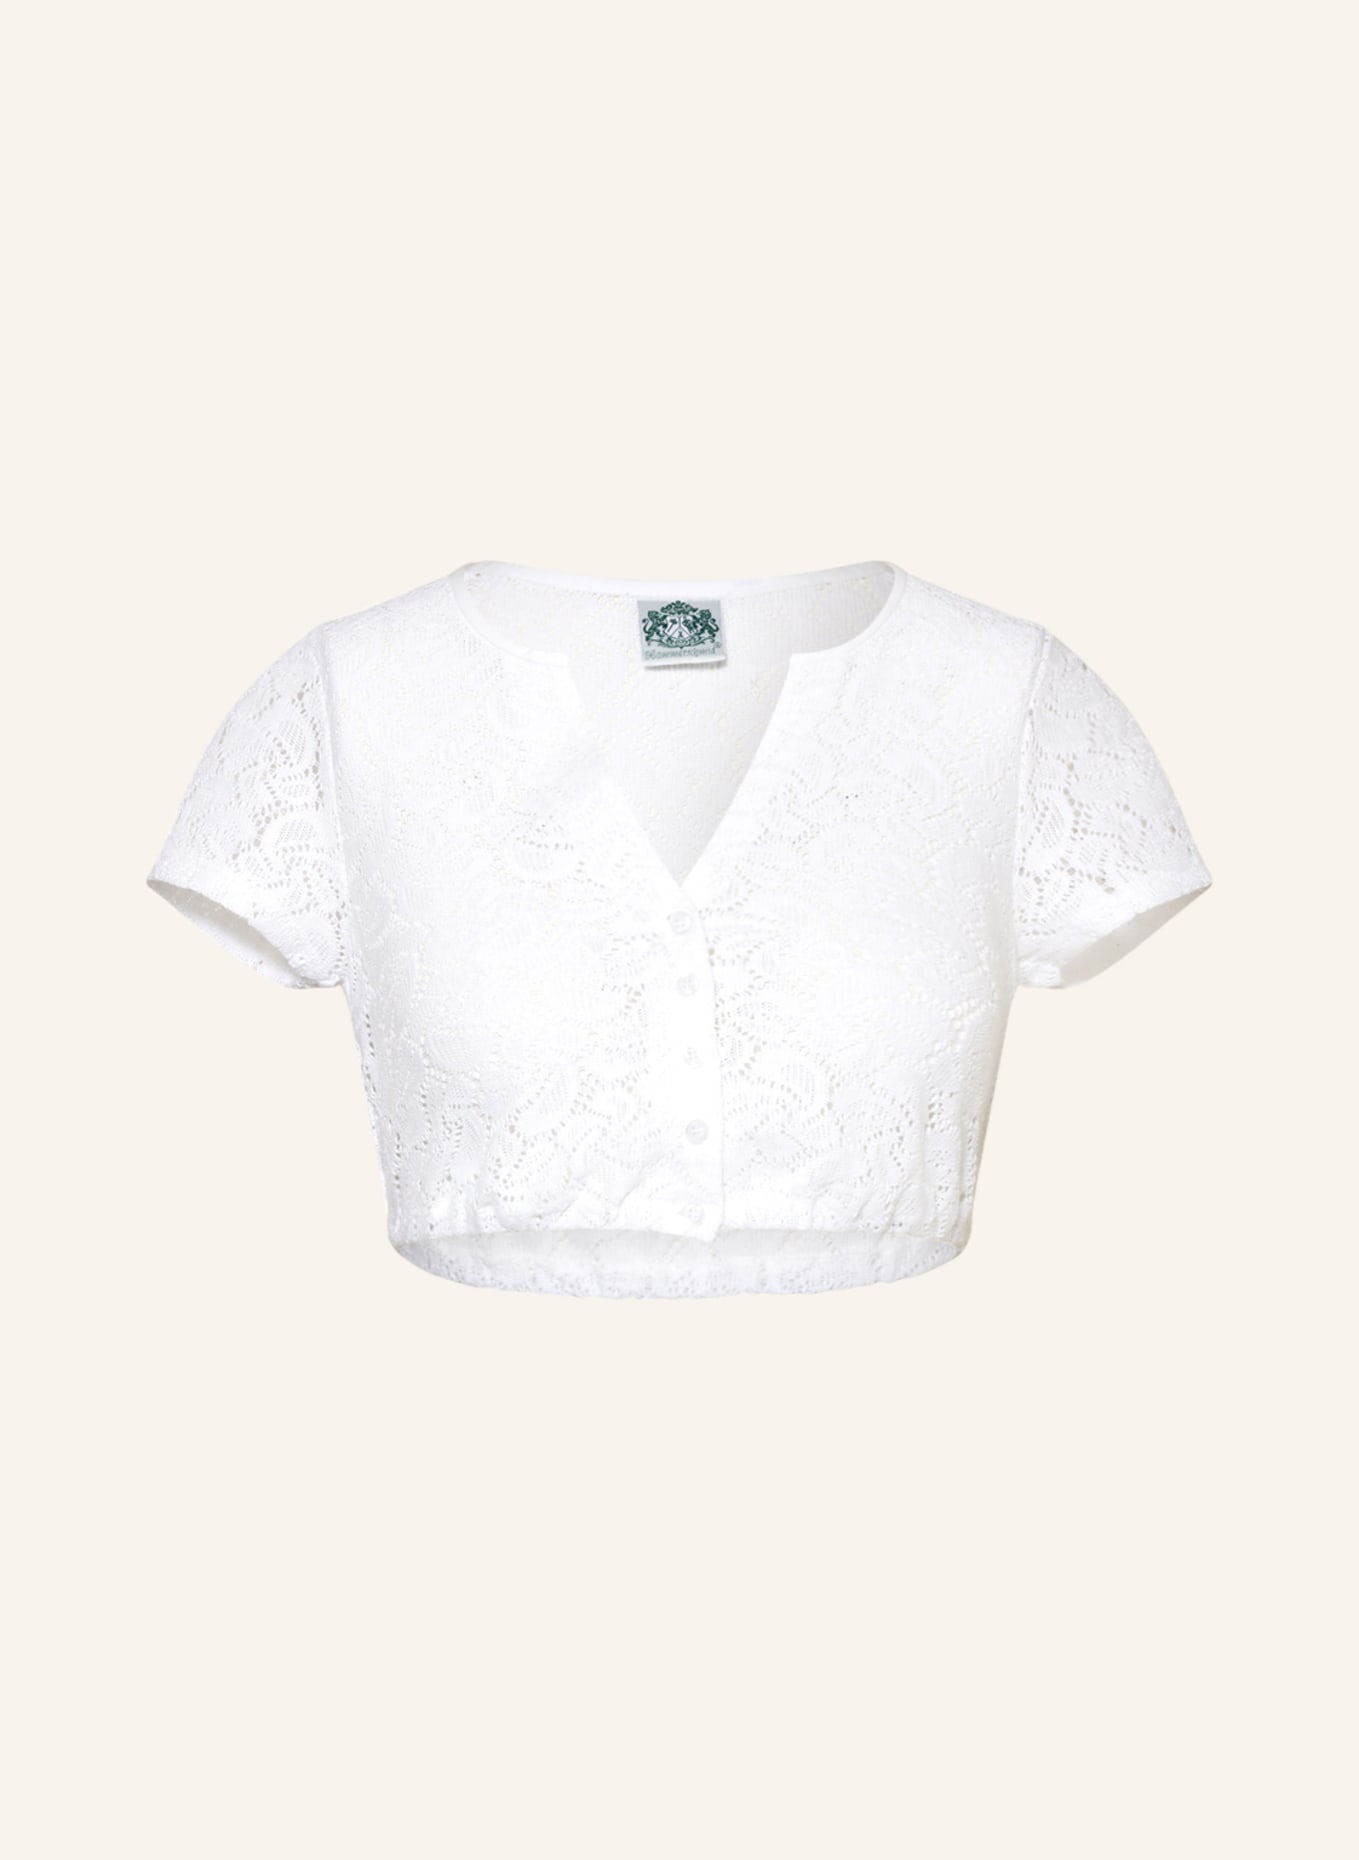 Hammerschmid Dirndl blouse GERLINDE, Color: WHITE (Image 1)